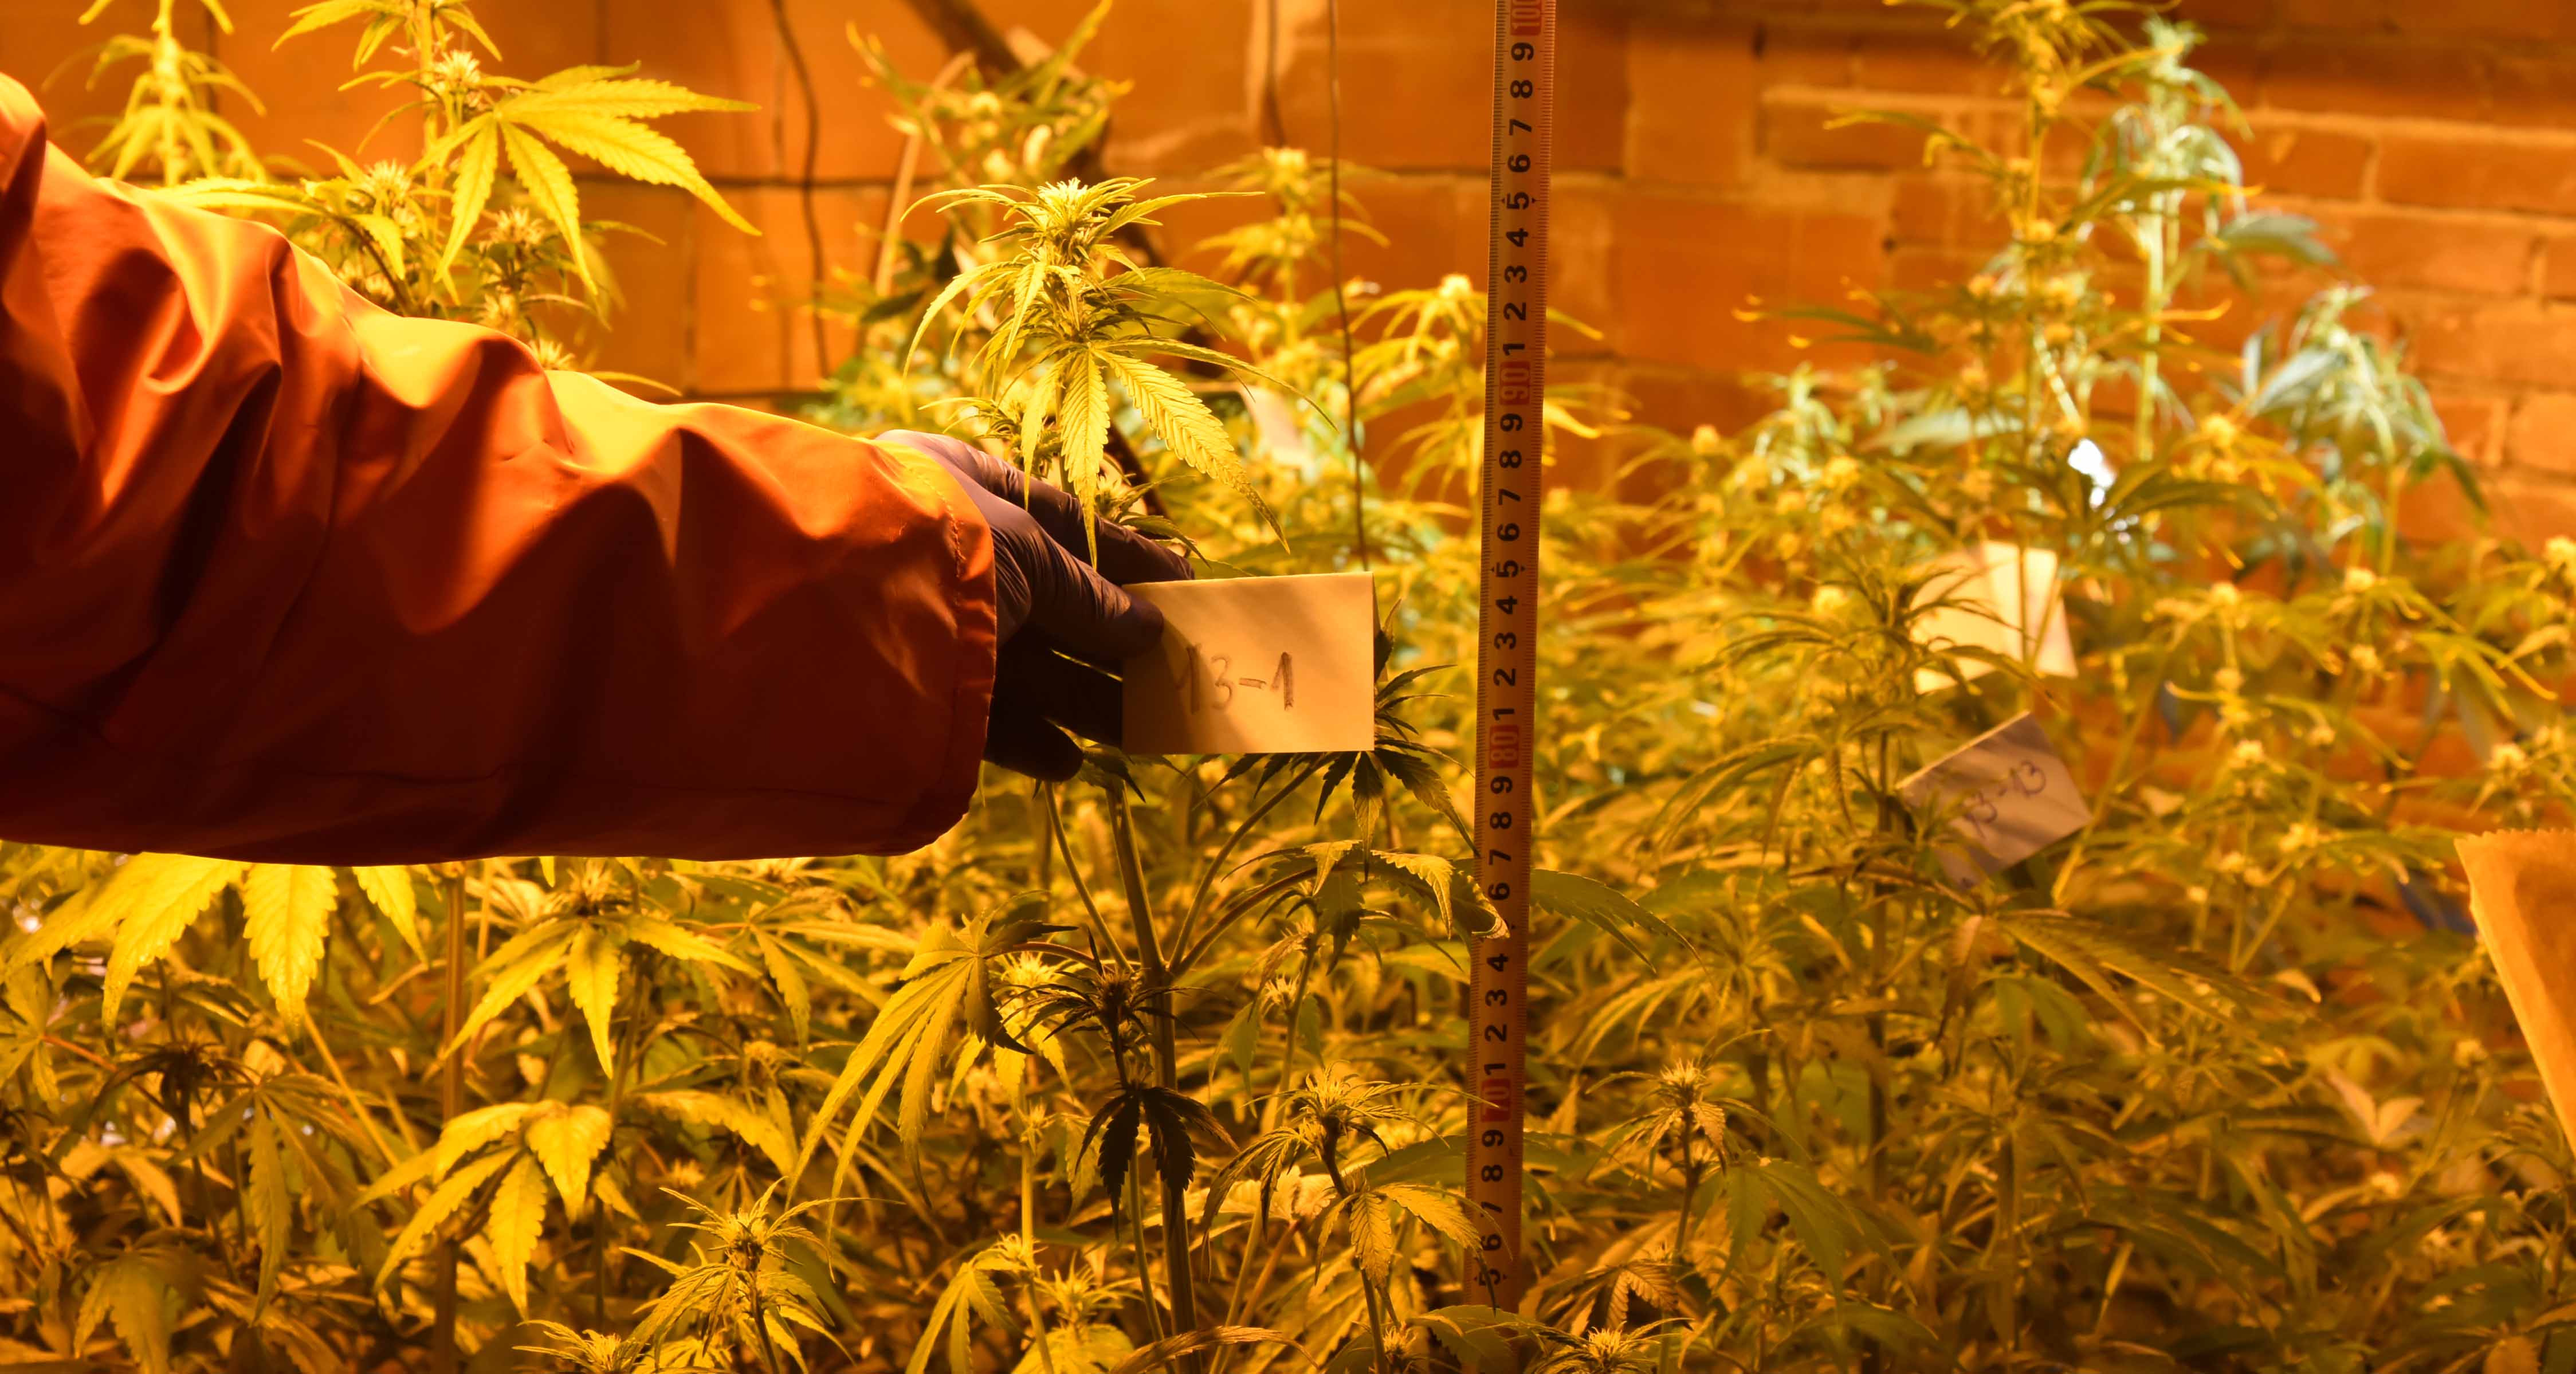 Otkrivena laboratoriju za uzgoj marihuane, uhapšene dve osobe